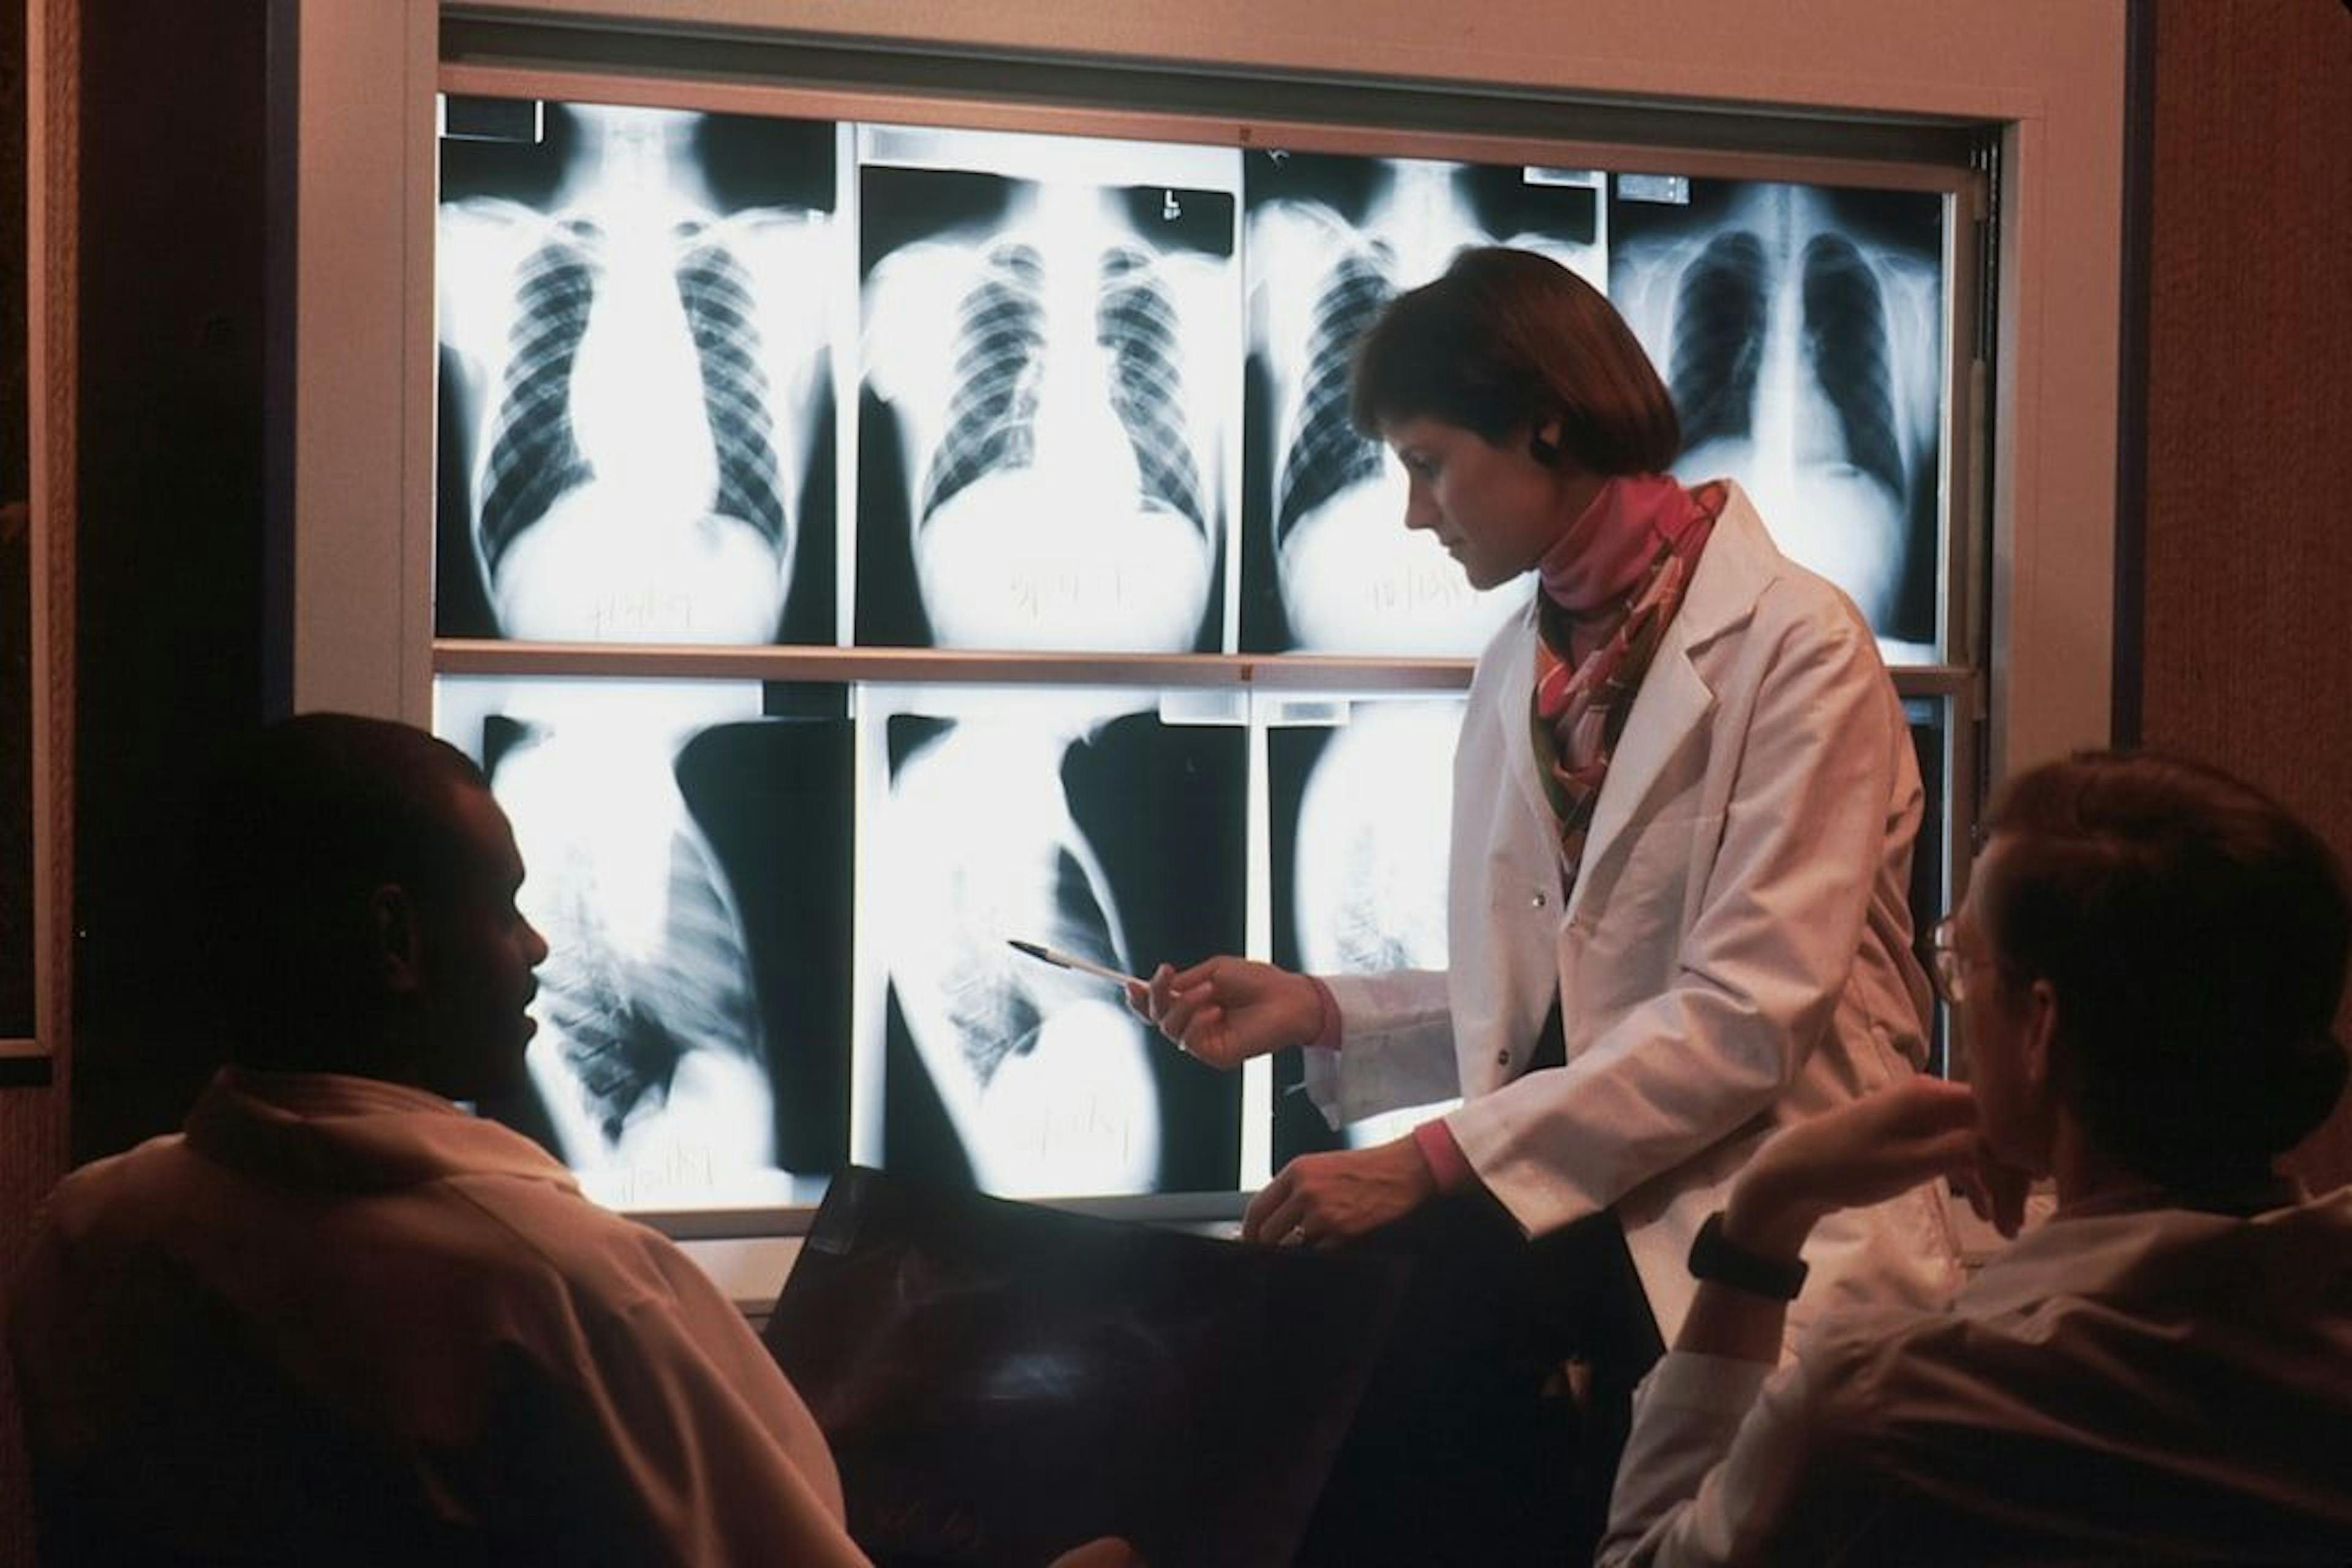 featured image - Aufbau Ihres KI-Radiologen: Eine unterhaltsame Anleitung zum Erstellen eines Lungenentzündungsdetektors mit VGG16